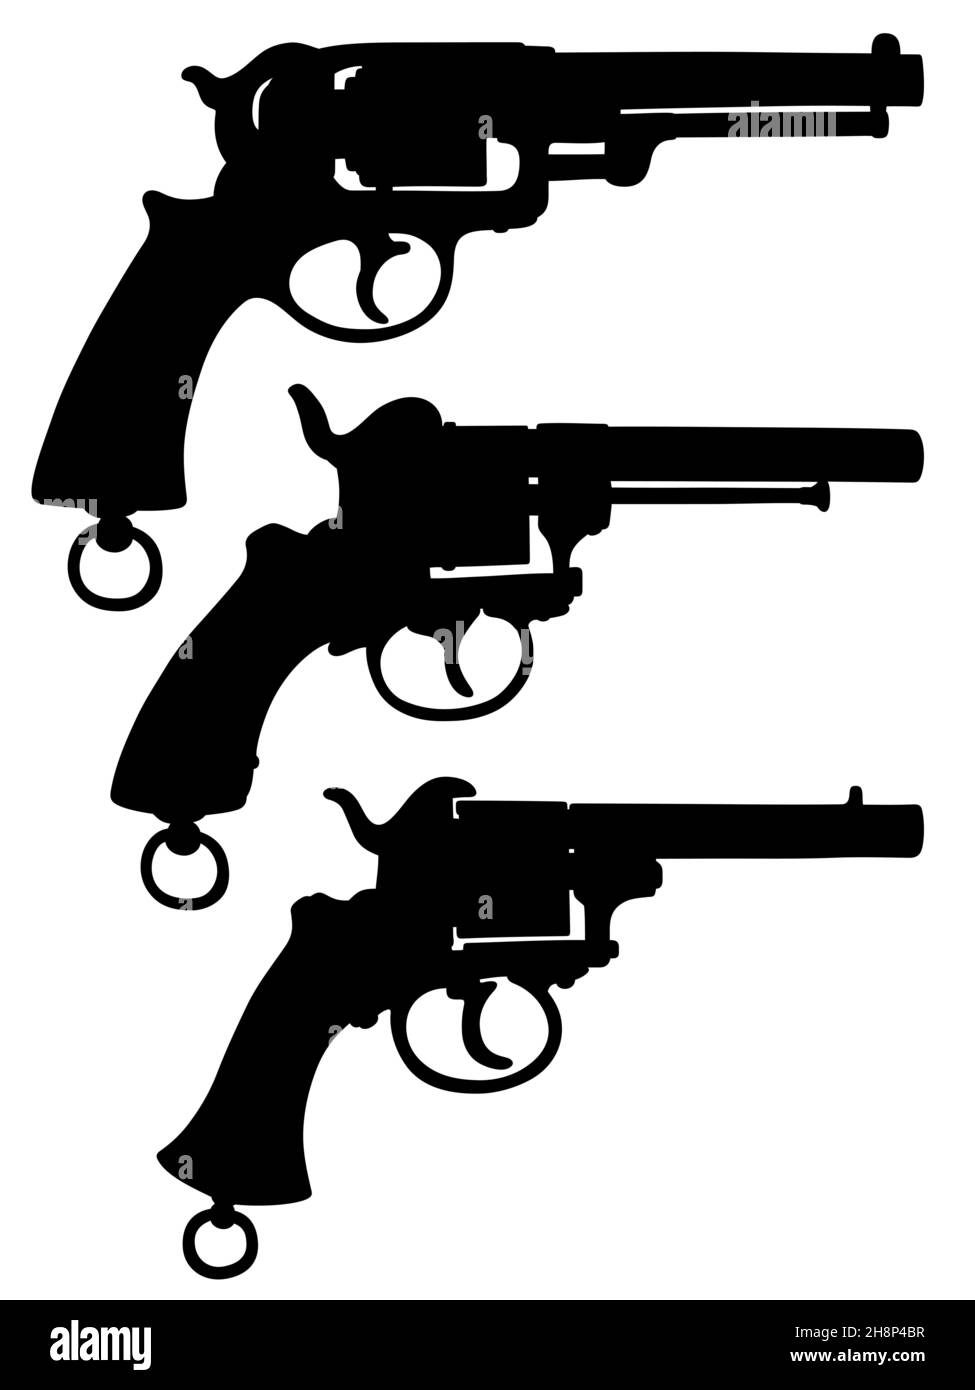 Disegno a mano di silhouette nere di tre revolver militari d'epoca Foto Stock